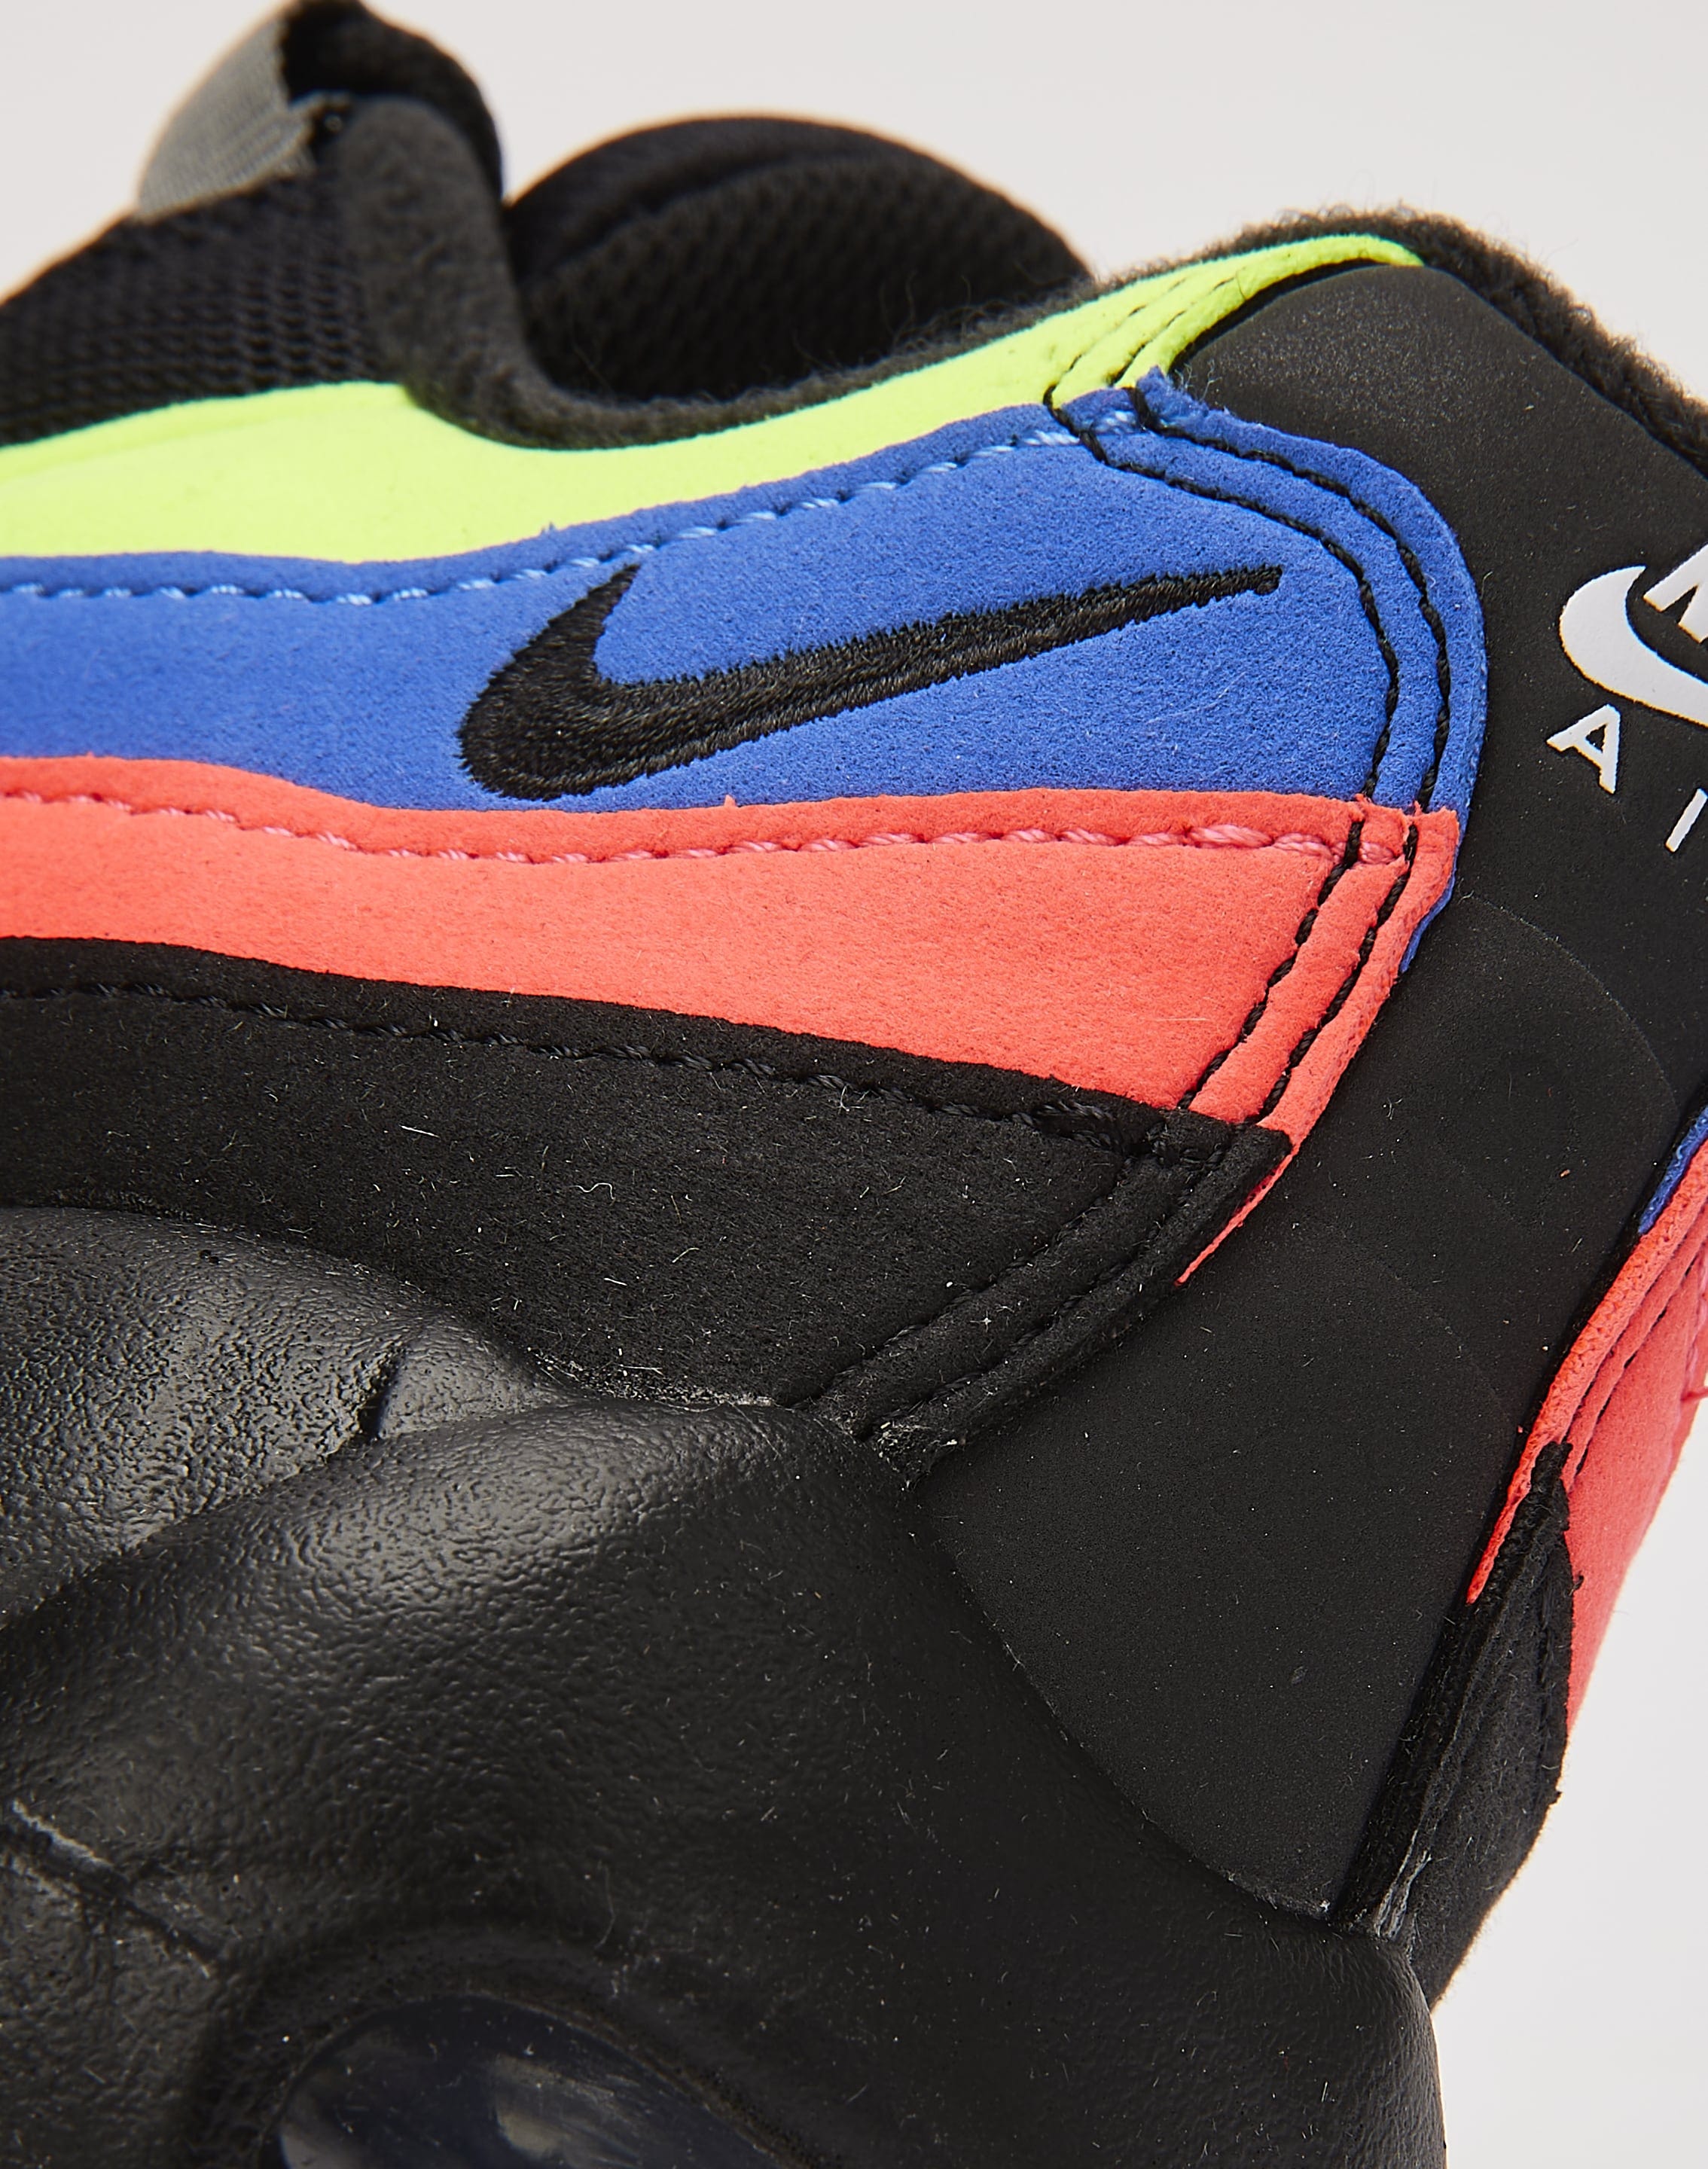 Nike Air Max 95 Essential – DTLR